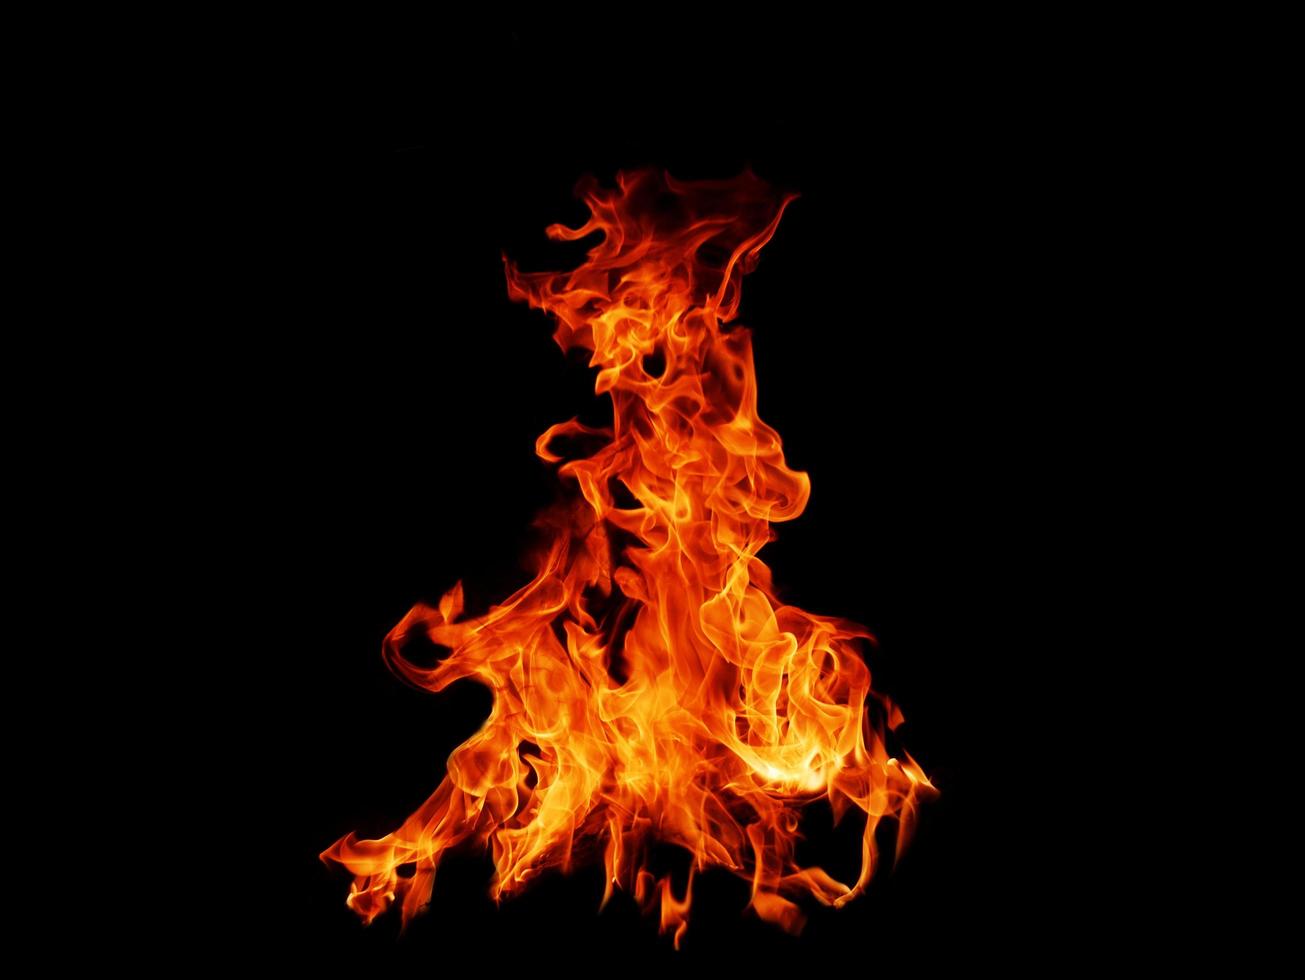 flamme flamme texture pour forme étrange feu fond flamme viande photo